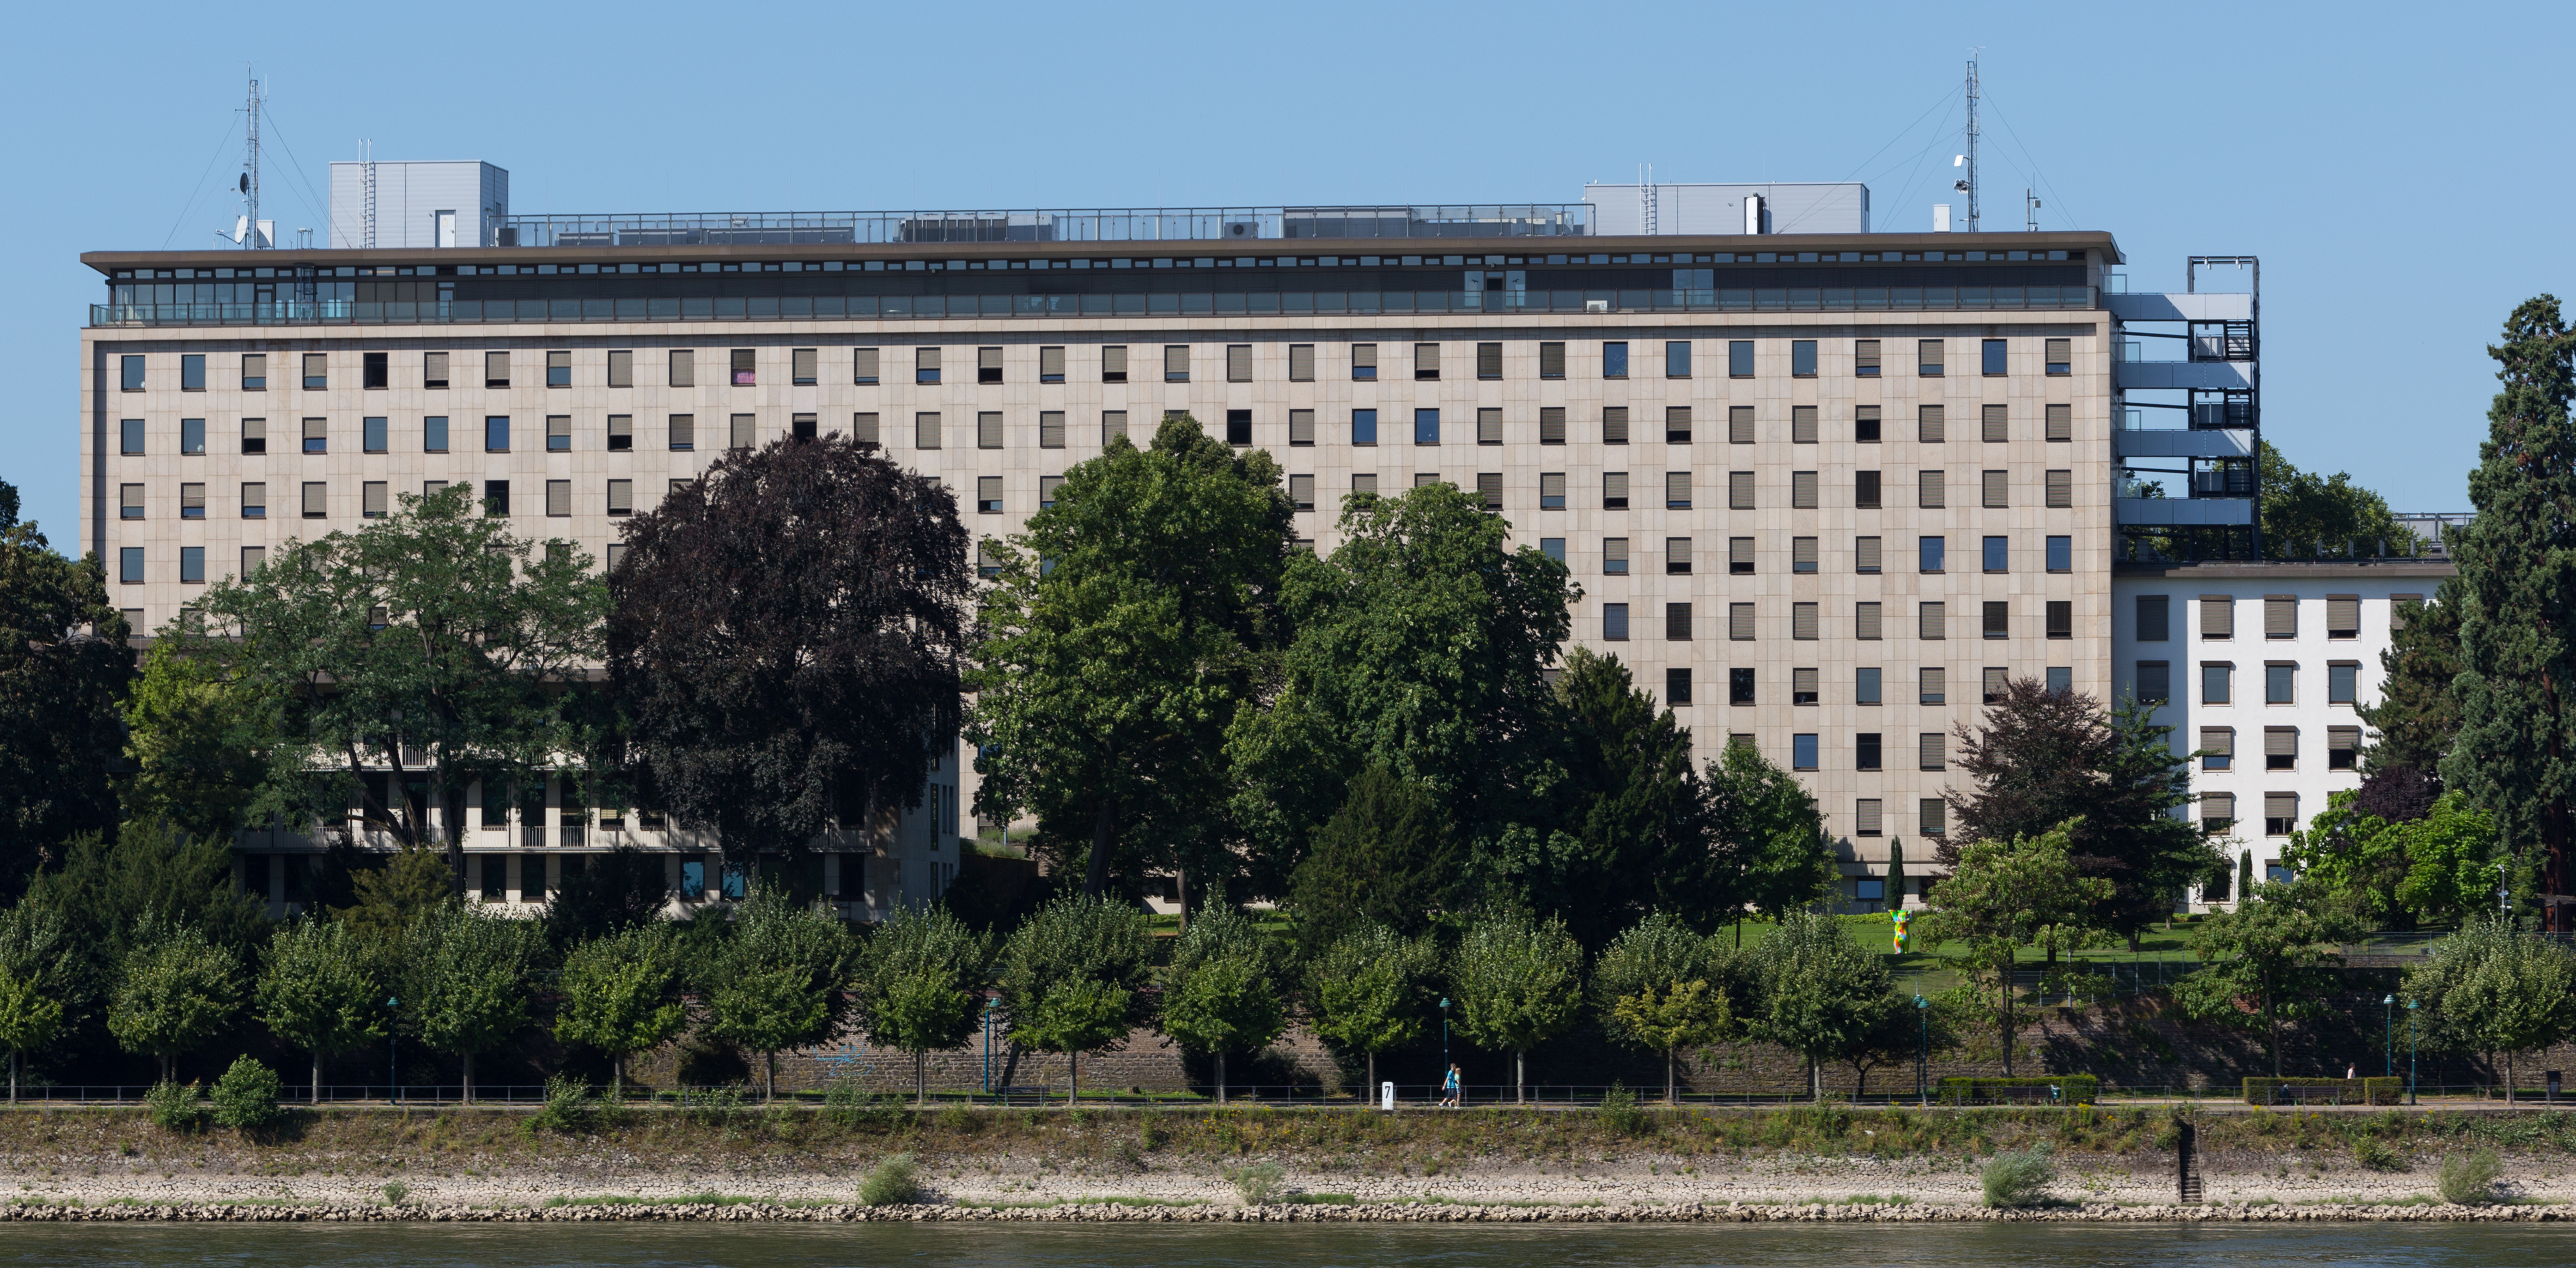 2013-08-05 Adenauerallee 99-103, Bonn, Rheinseite- Gebäude des Auswärtigen Amts, Bundesamts für Justiz und Bundesministerium der Justiz IMG 0510